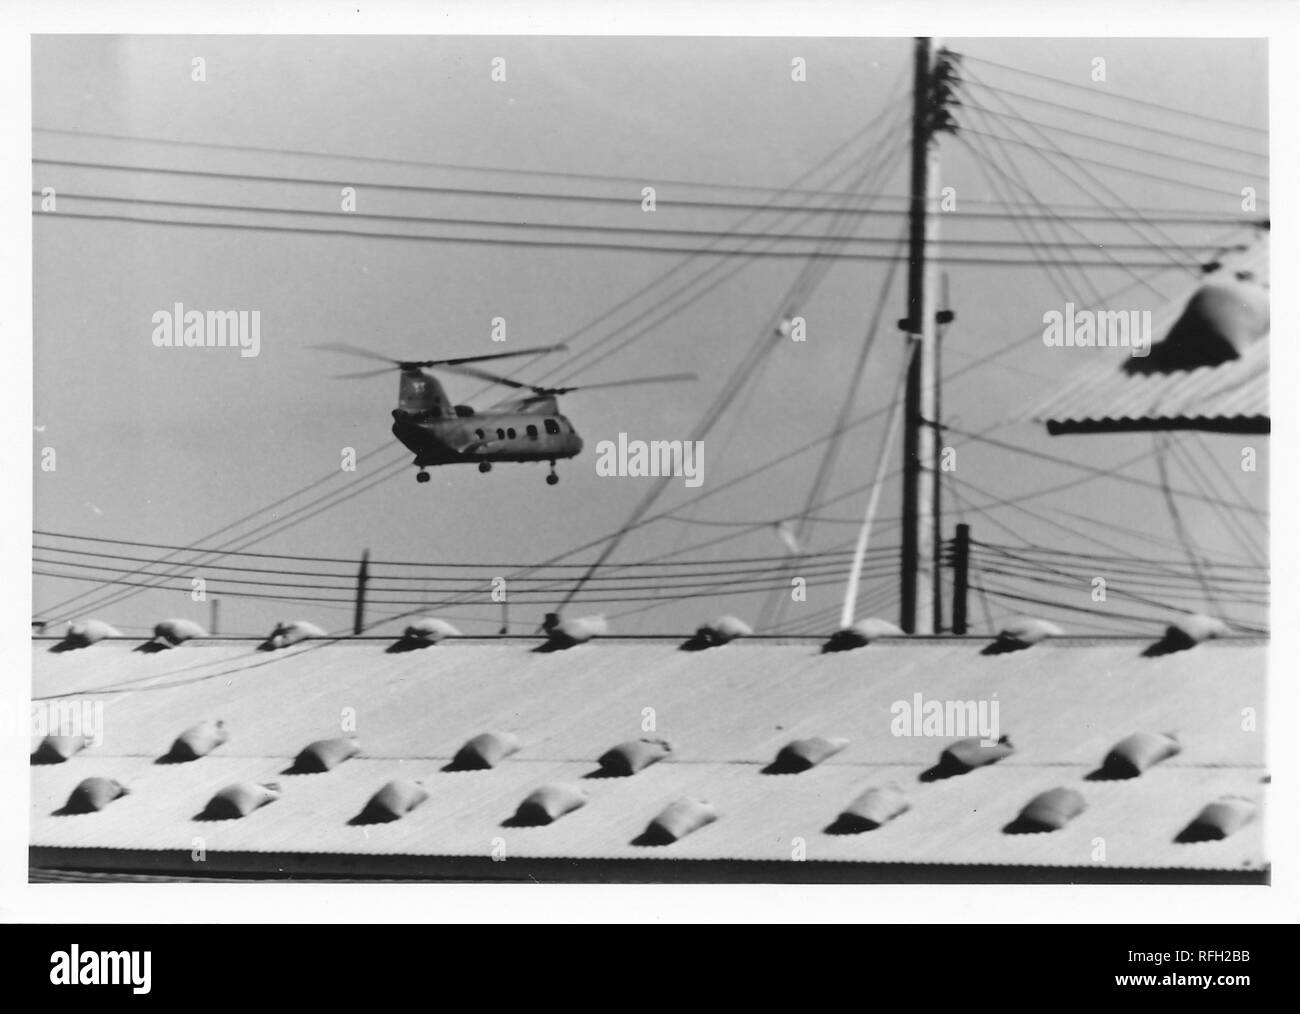 Fotografia in bianco e nero, mostrando un tandem rotore elicottero, è probabile che un Boeing CH-47 Chinook in volo con fili elettrici e il tetto di una baracca o edificio amministrativo visibile in primo piano, fotografato durante la Guerra del Vietnam, 1968. () Foto Stock